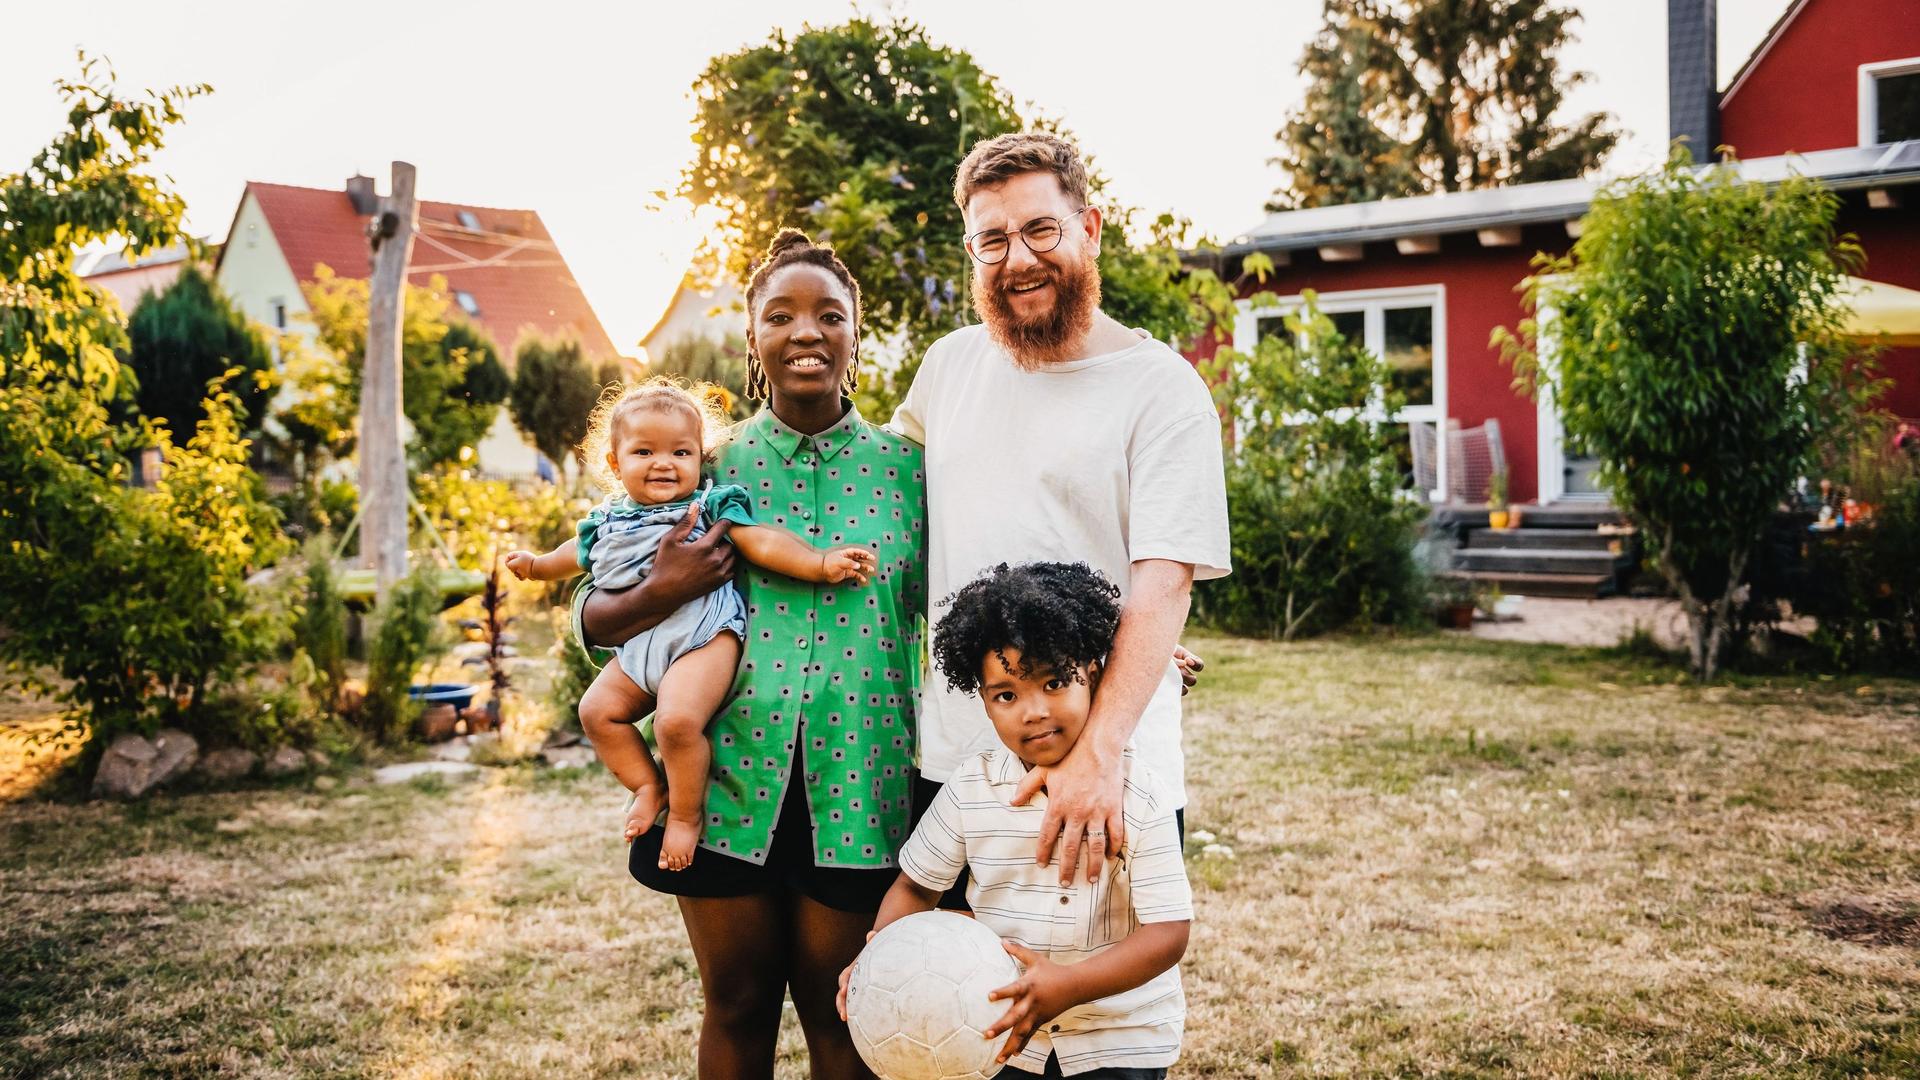 Eine Familie mit einem kleinen Kind und einem Baby steht vor einem roten Einfamilienhaus.